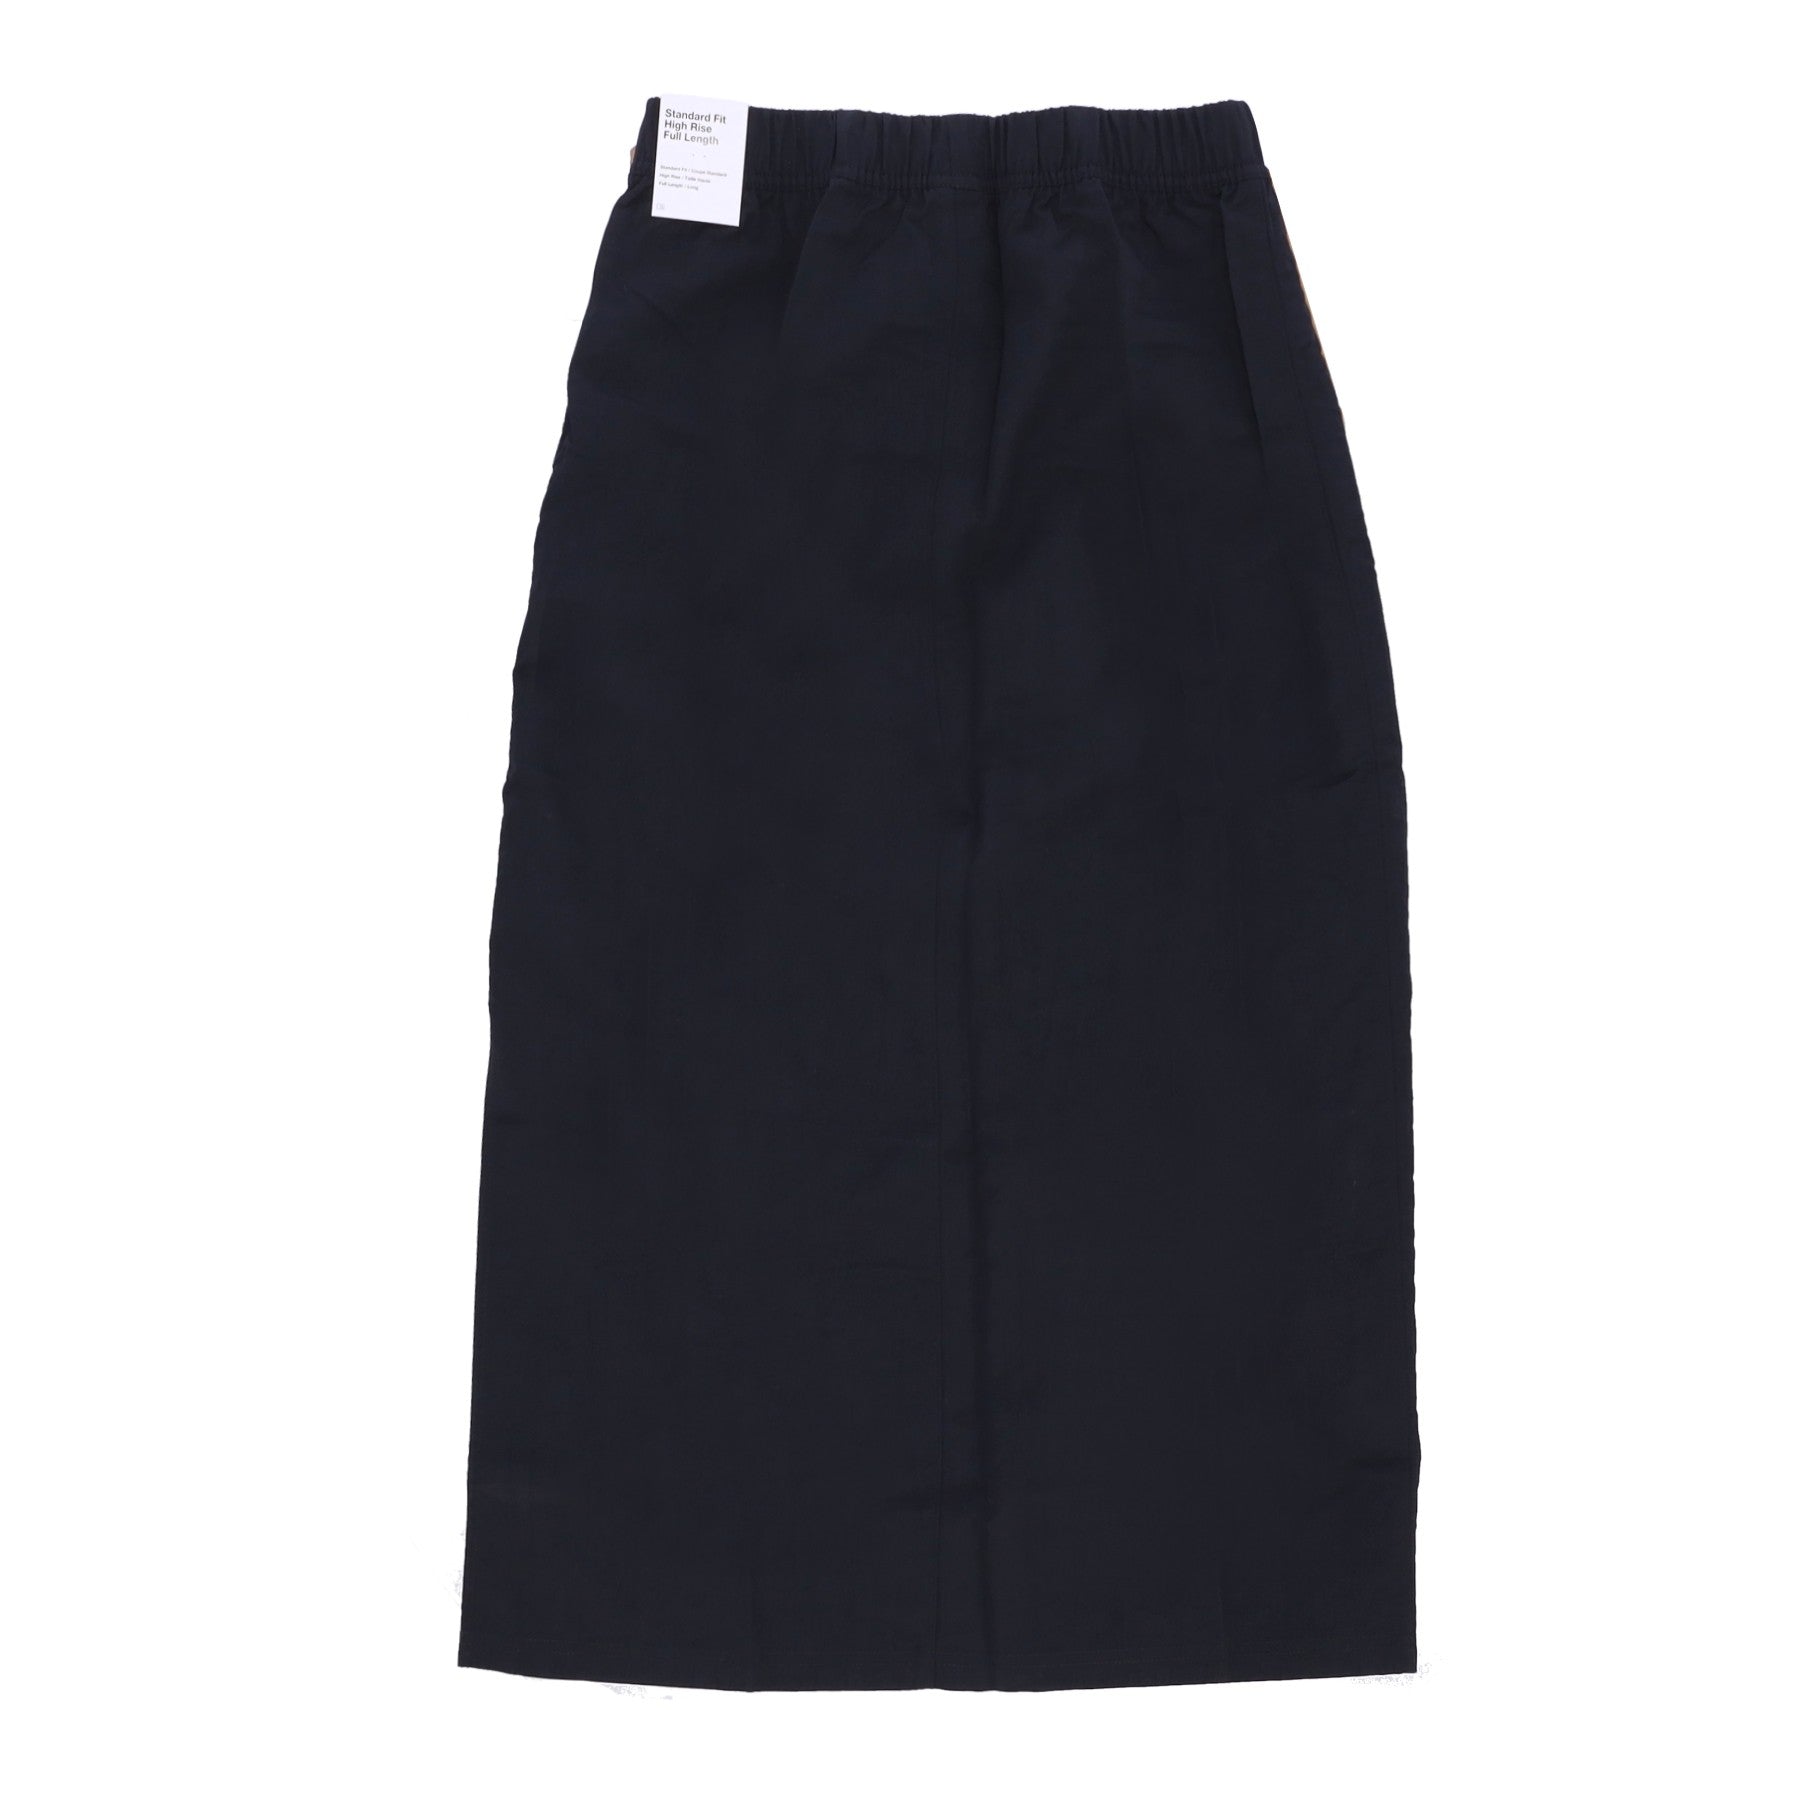 Essential Woven Hr Skirt Women's Long Skirt Black/white